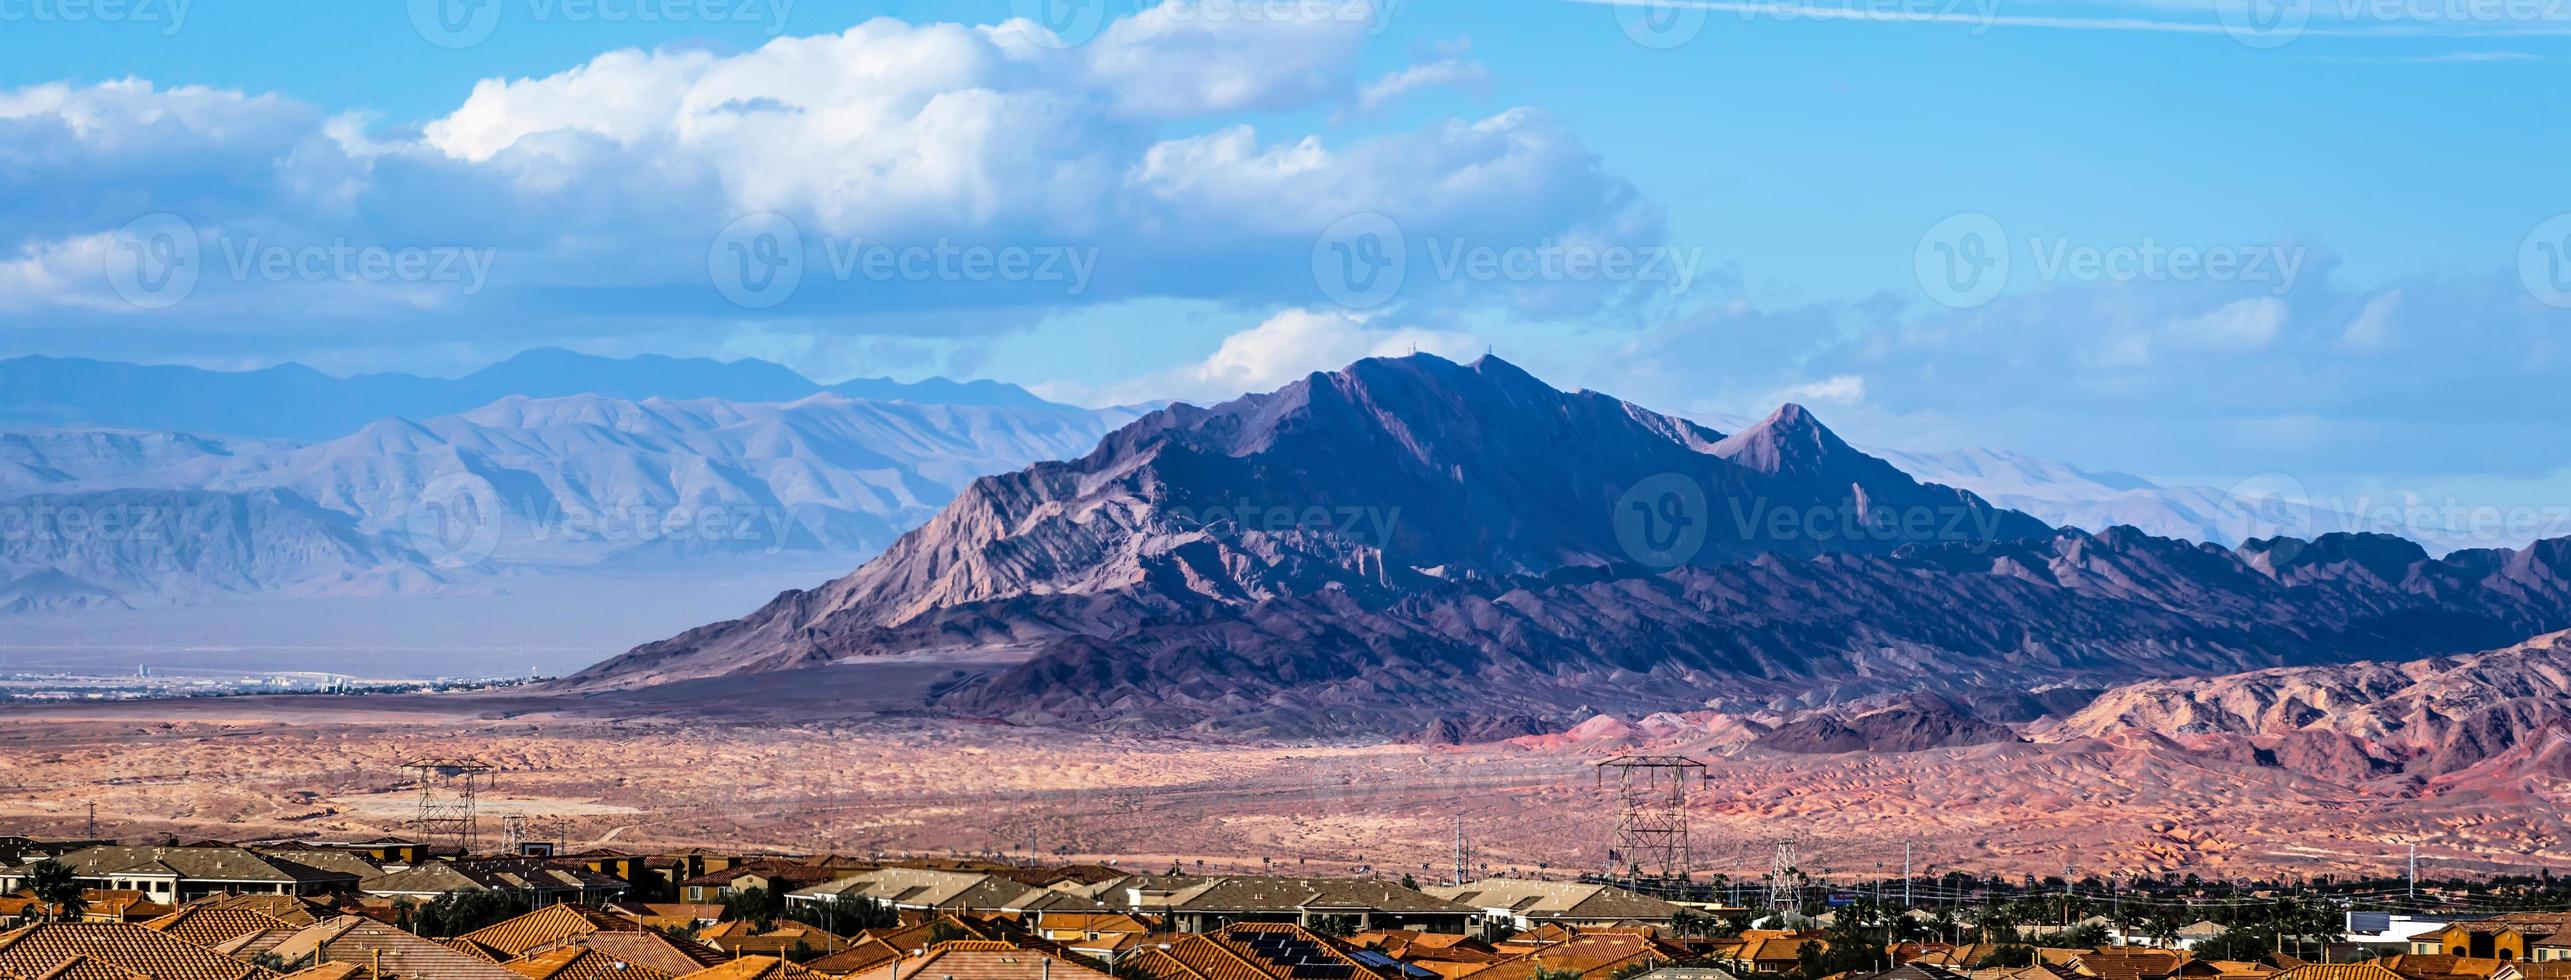 paisaje del cañón de roca roja cerca de las vegas, nevada foto